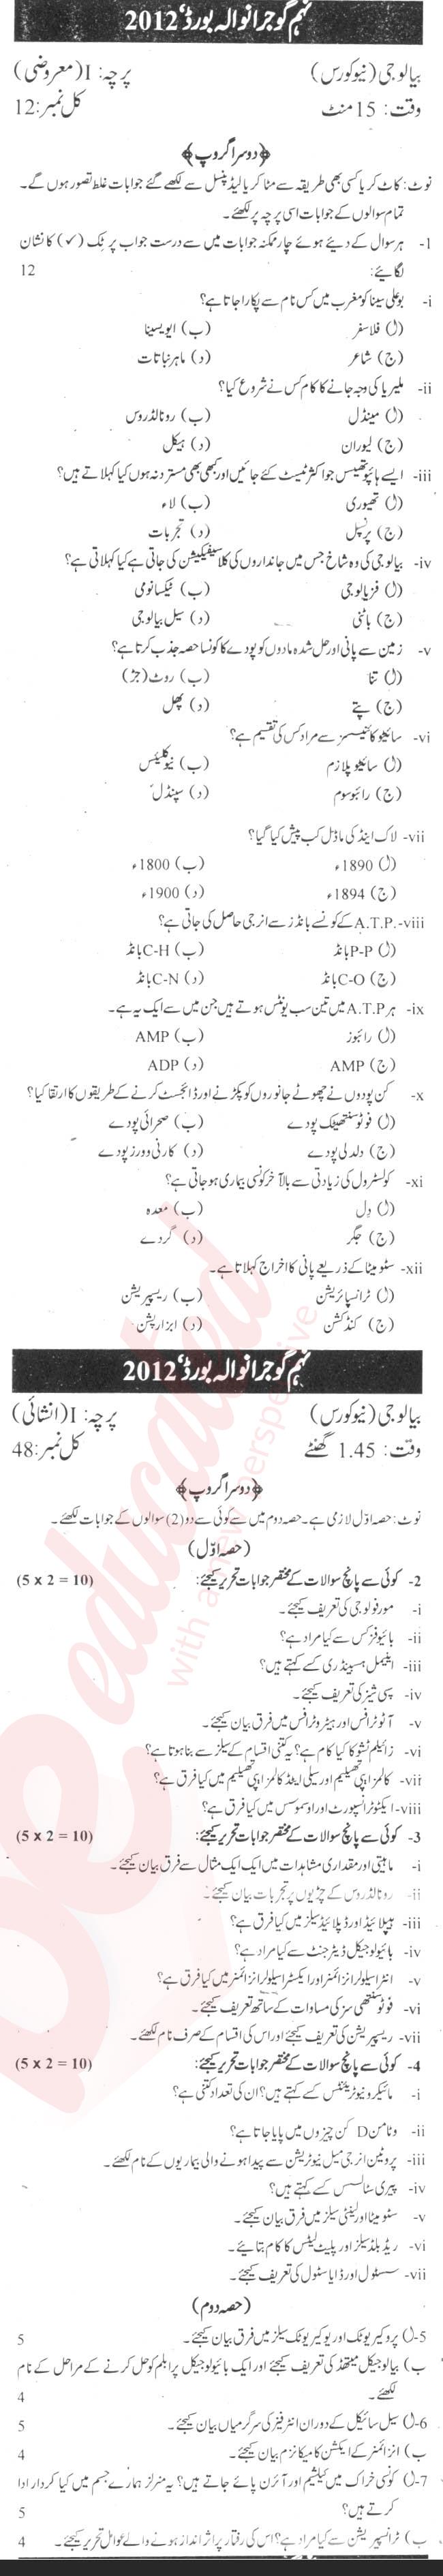 Biology 9th Urdu Medium Past Paper Group 2 BISE Gujranwala 2012